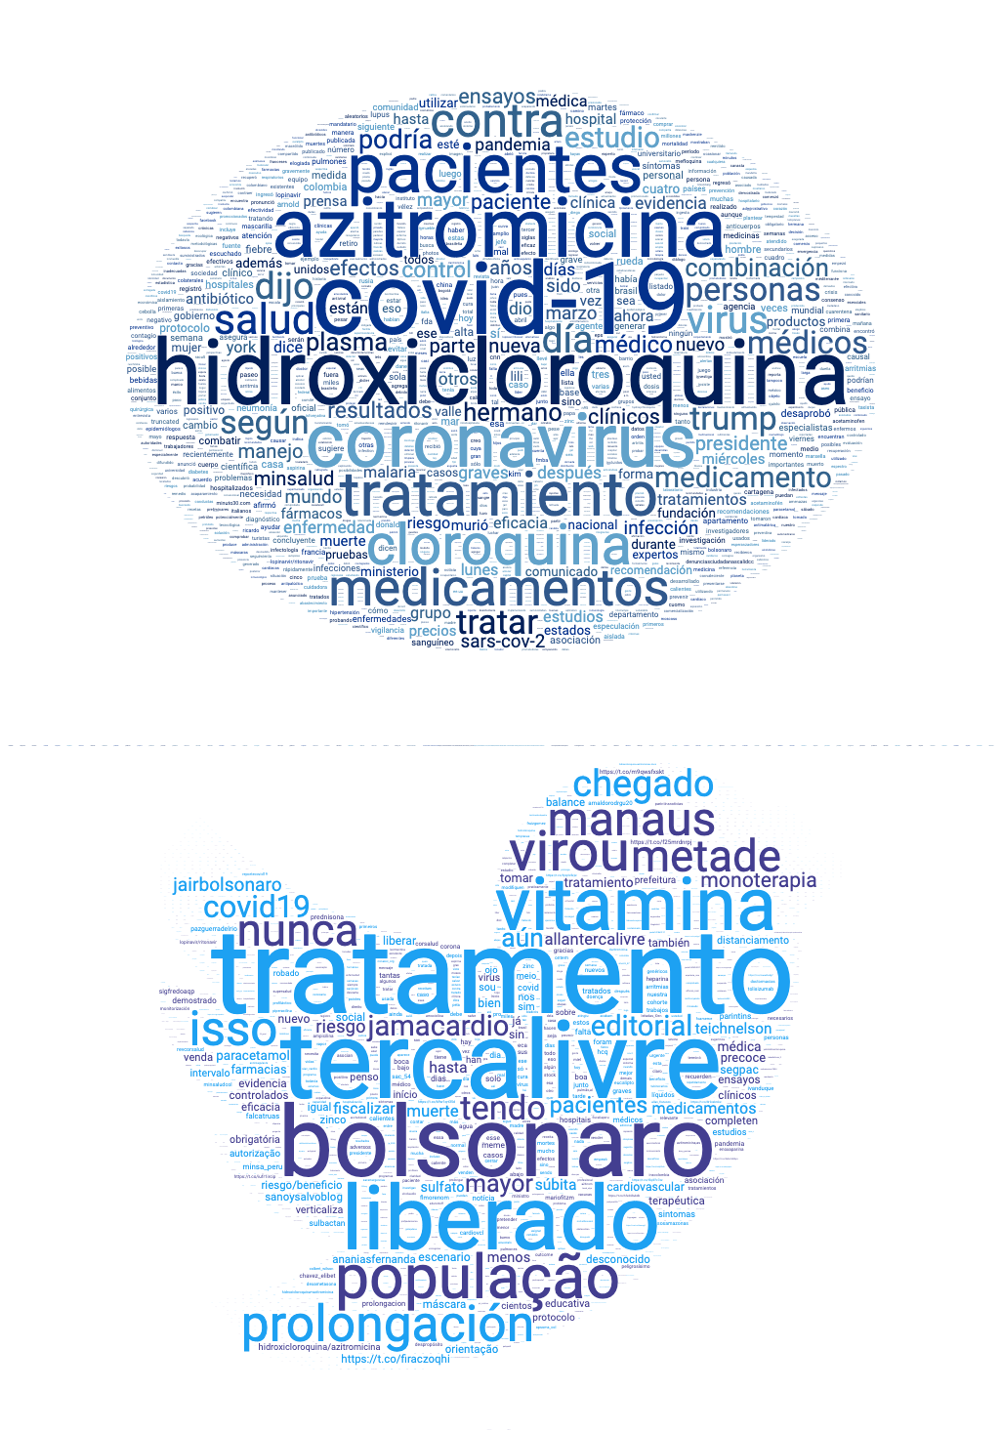 Palabras más usadas en publicaciones de Facebook y Twitter con la palabra “cloroquina” o “hidroxicloroquina”.